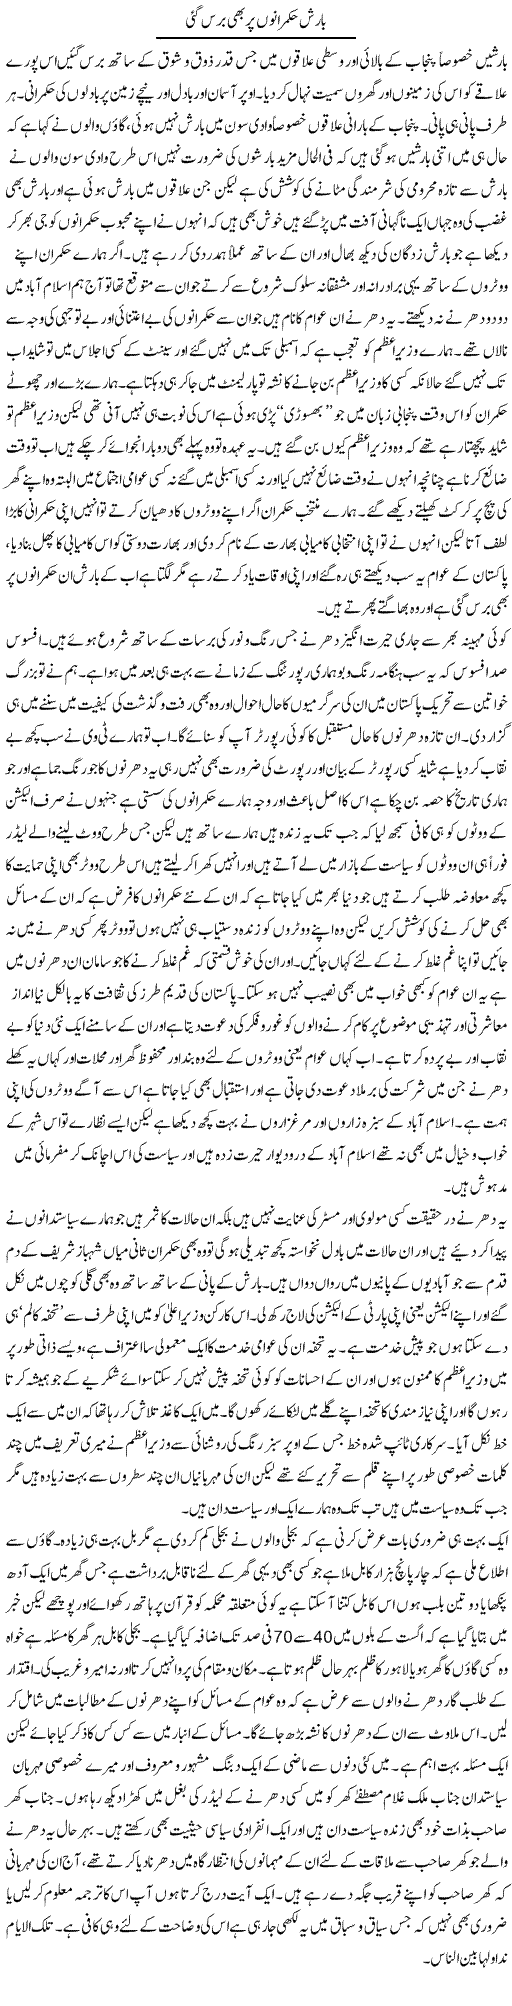 Barish Hukmarano Per Bhi Baras Gai | Abdul Qadir Hassan | Daily Urdu Columns